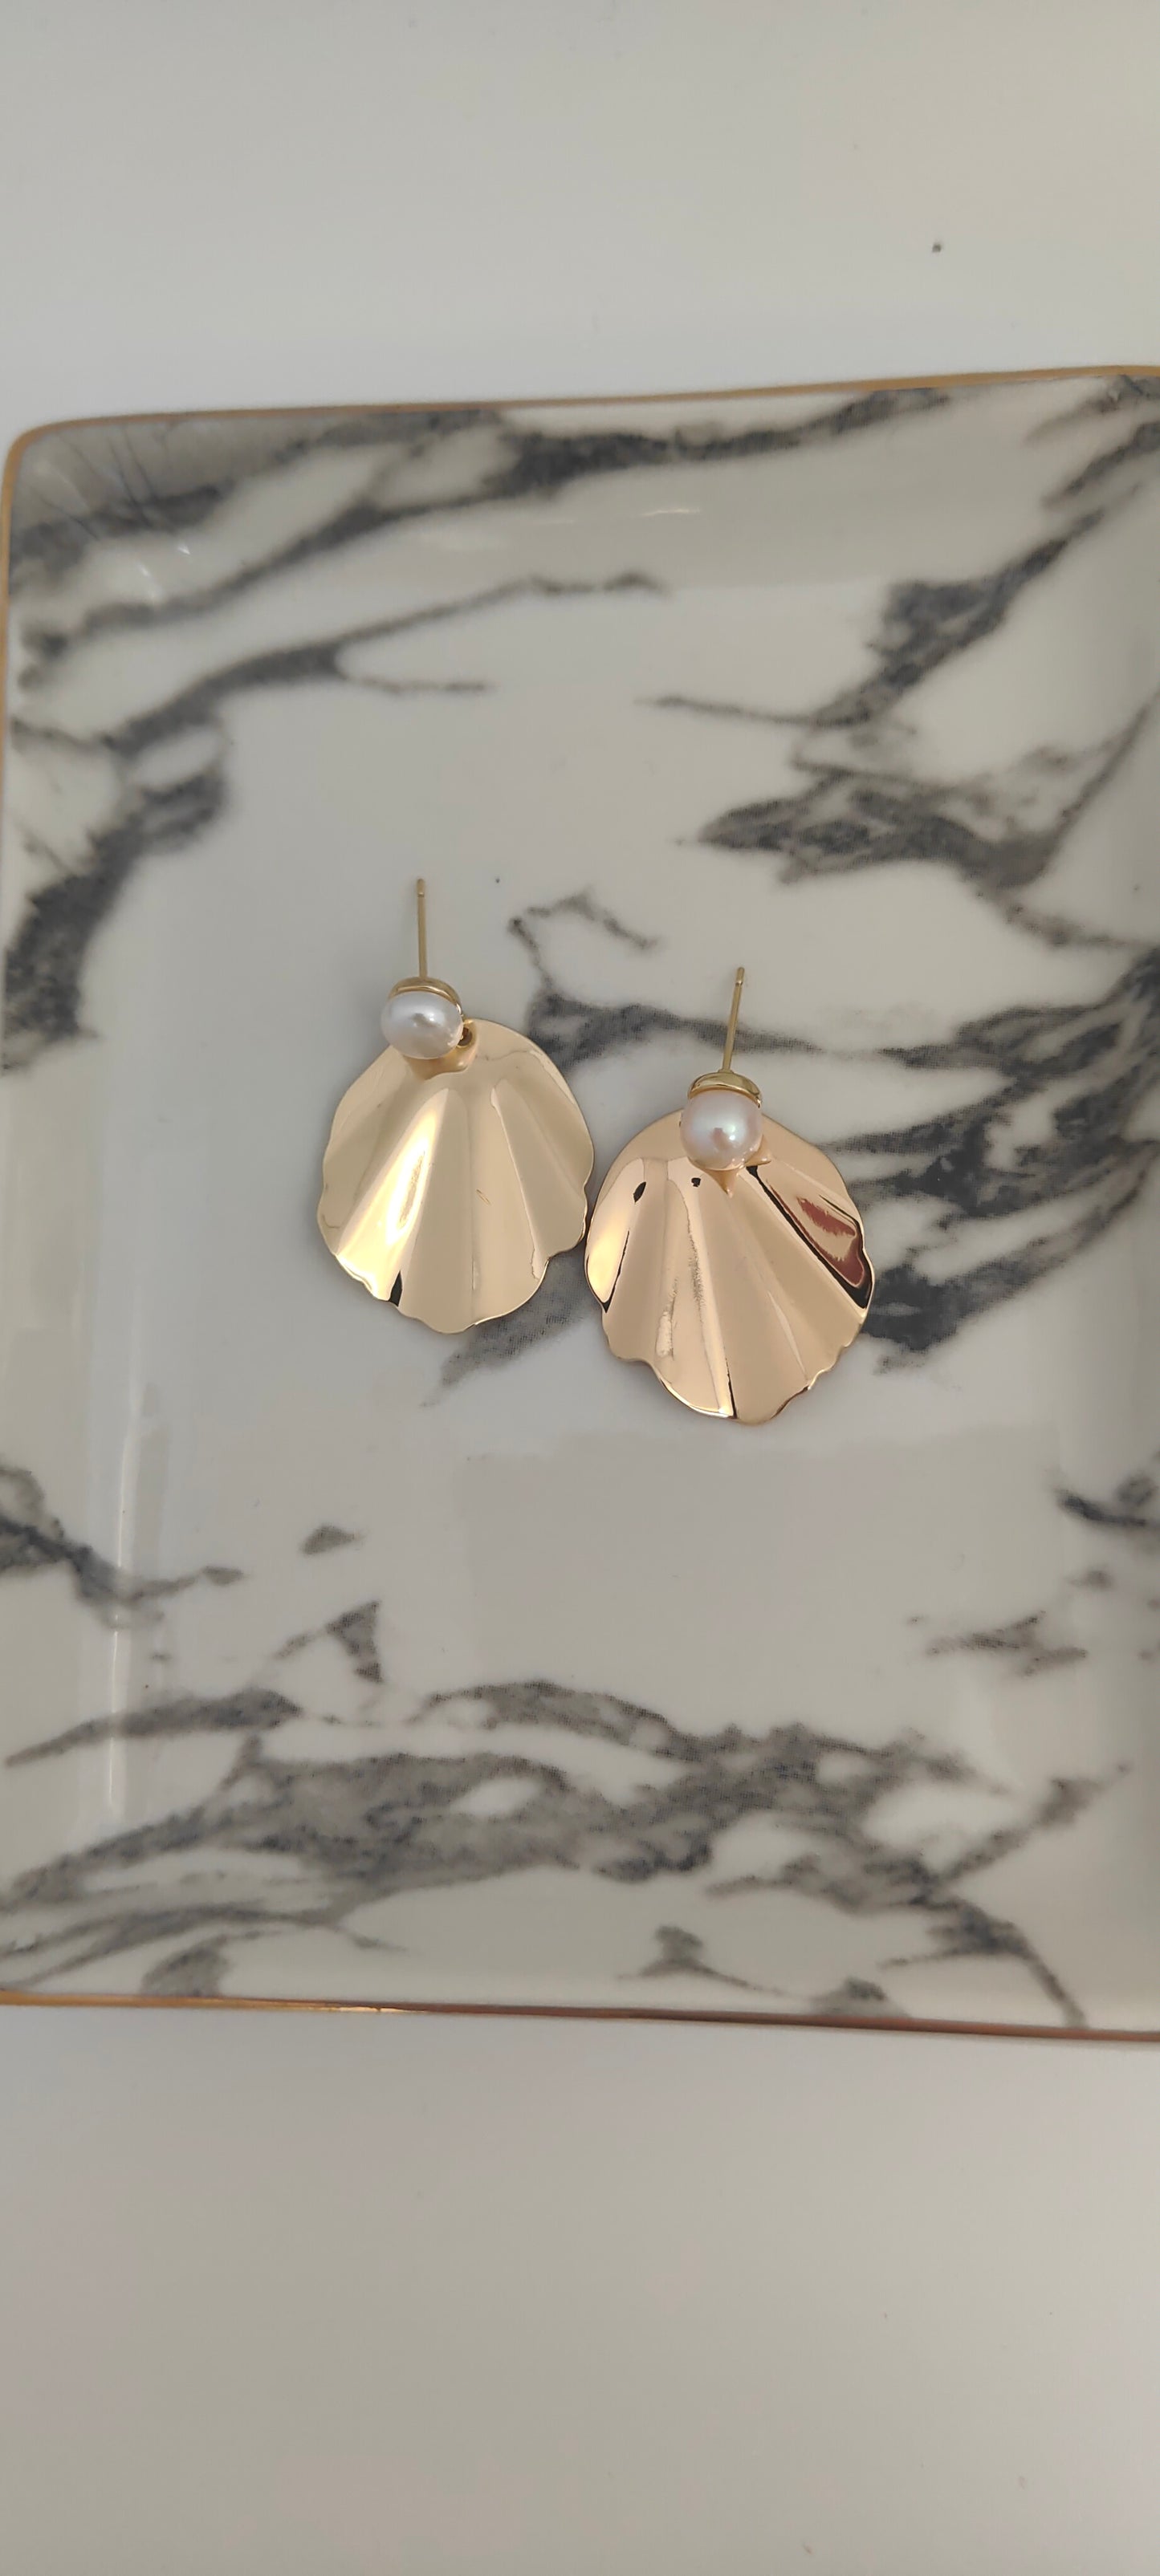 ROSIE - Statement Pearl & Gold Bridal Earrings